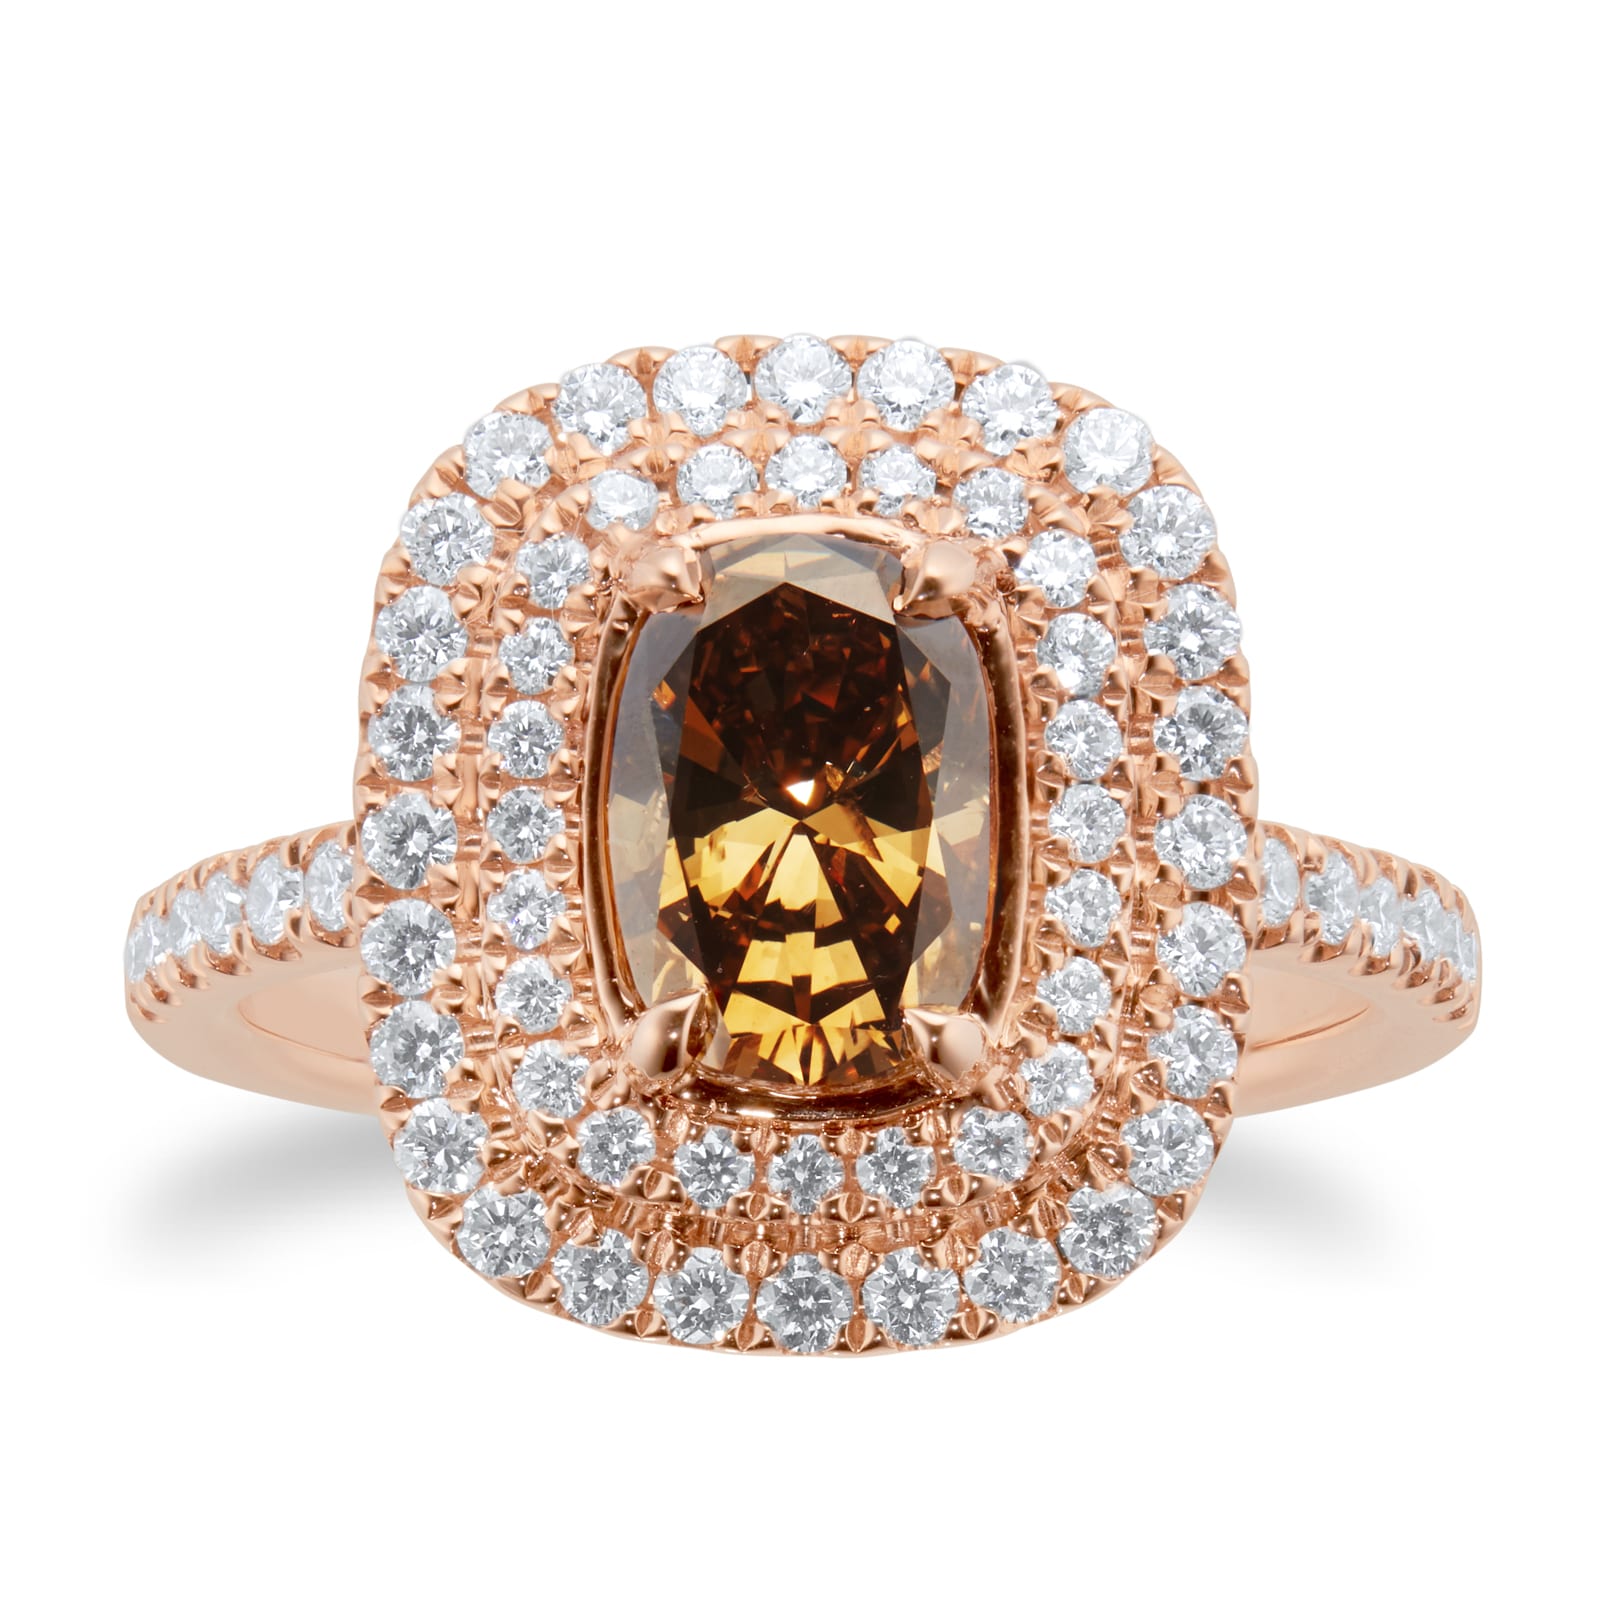 18ct Rose Gold 1.49cttw Brown Diamond Ring - Ring Size N